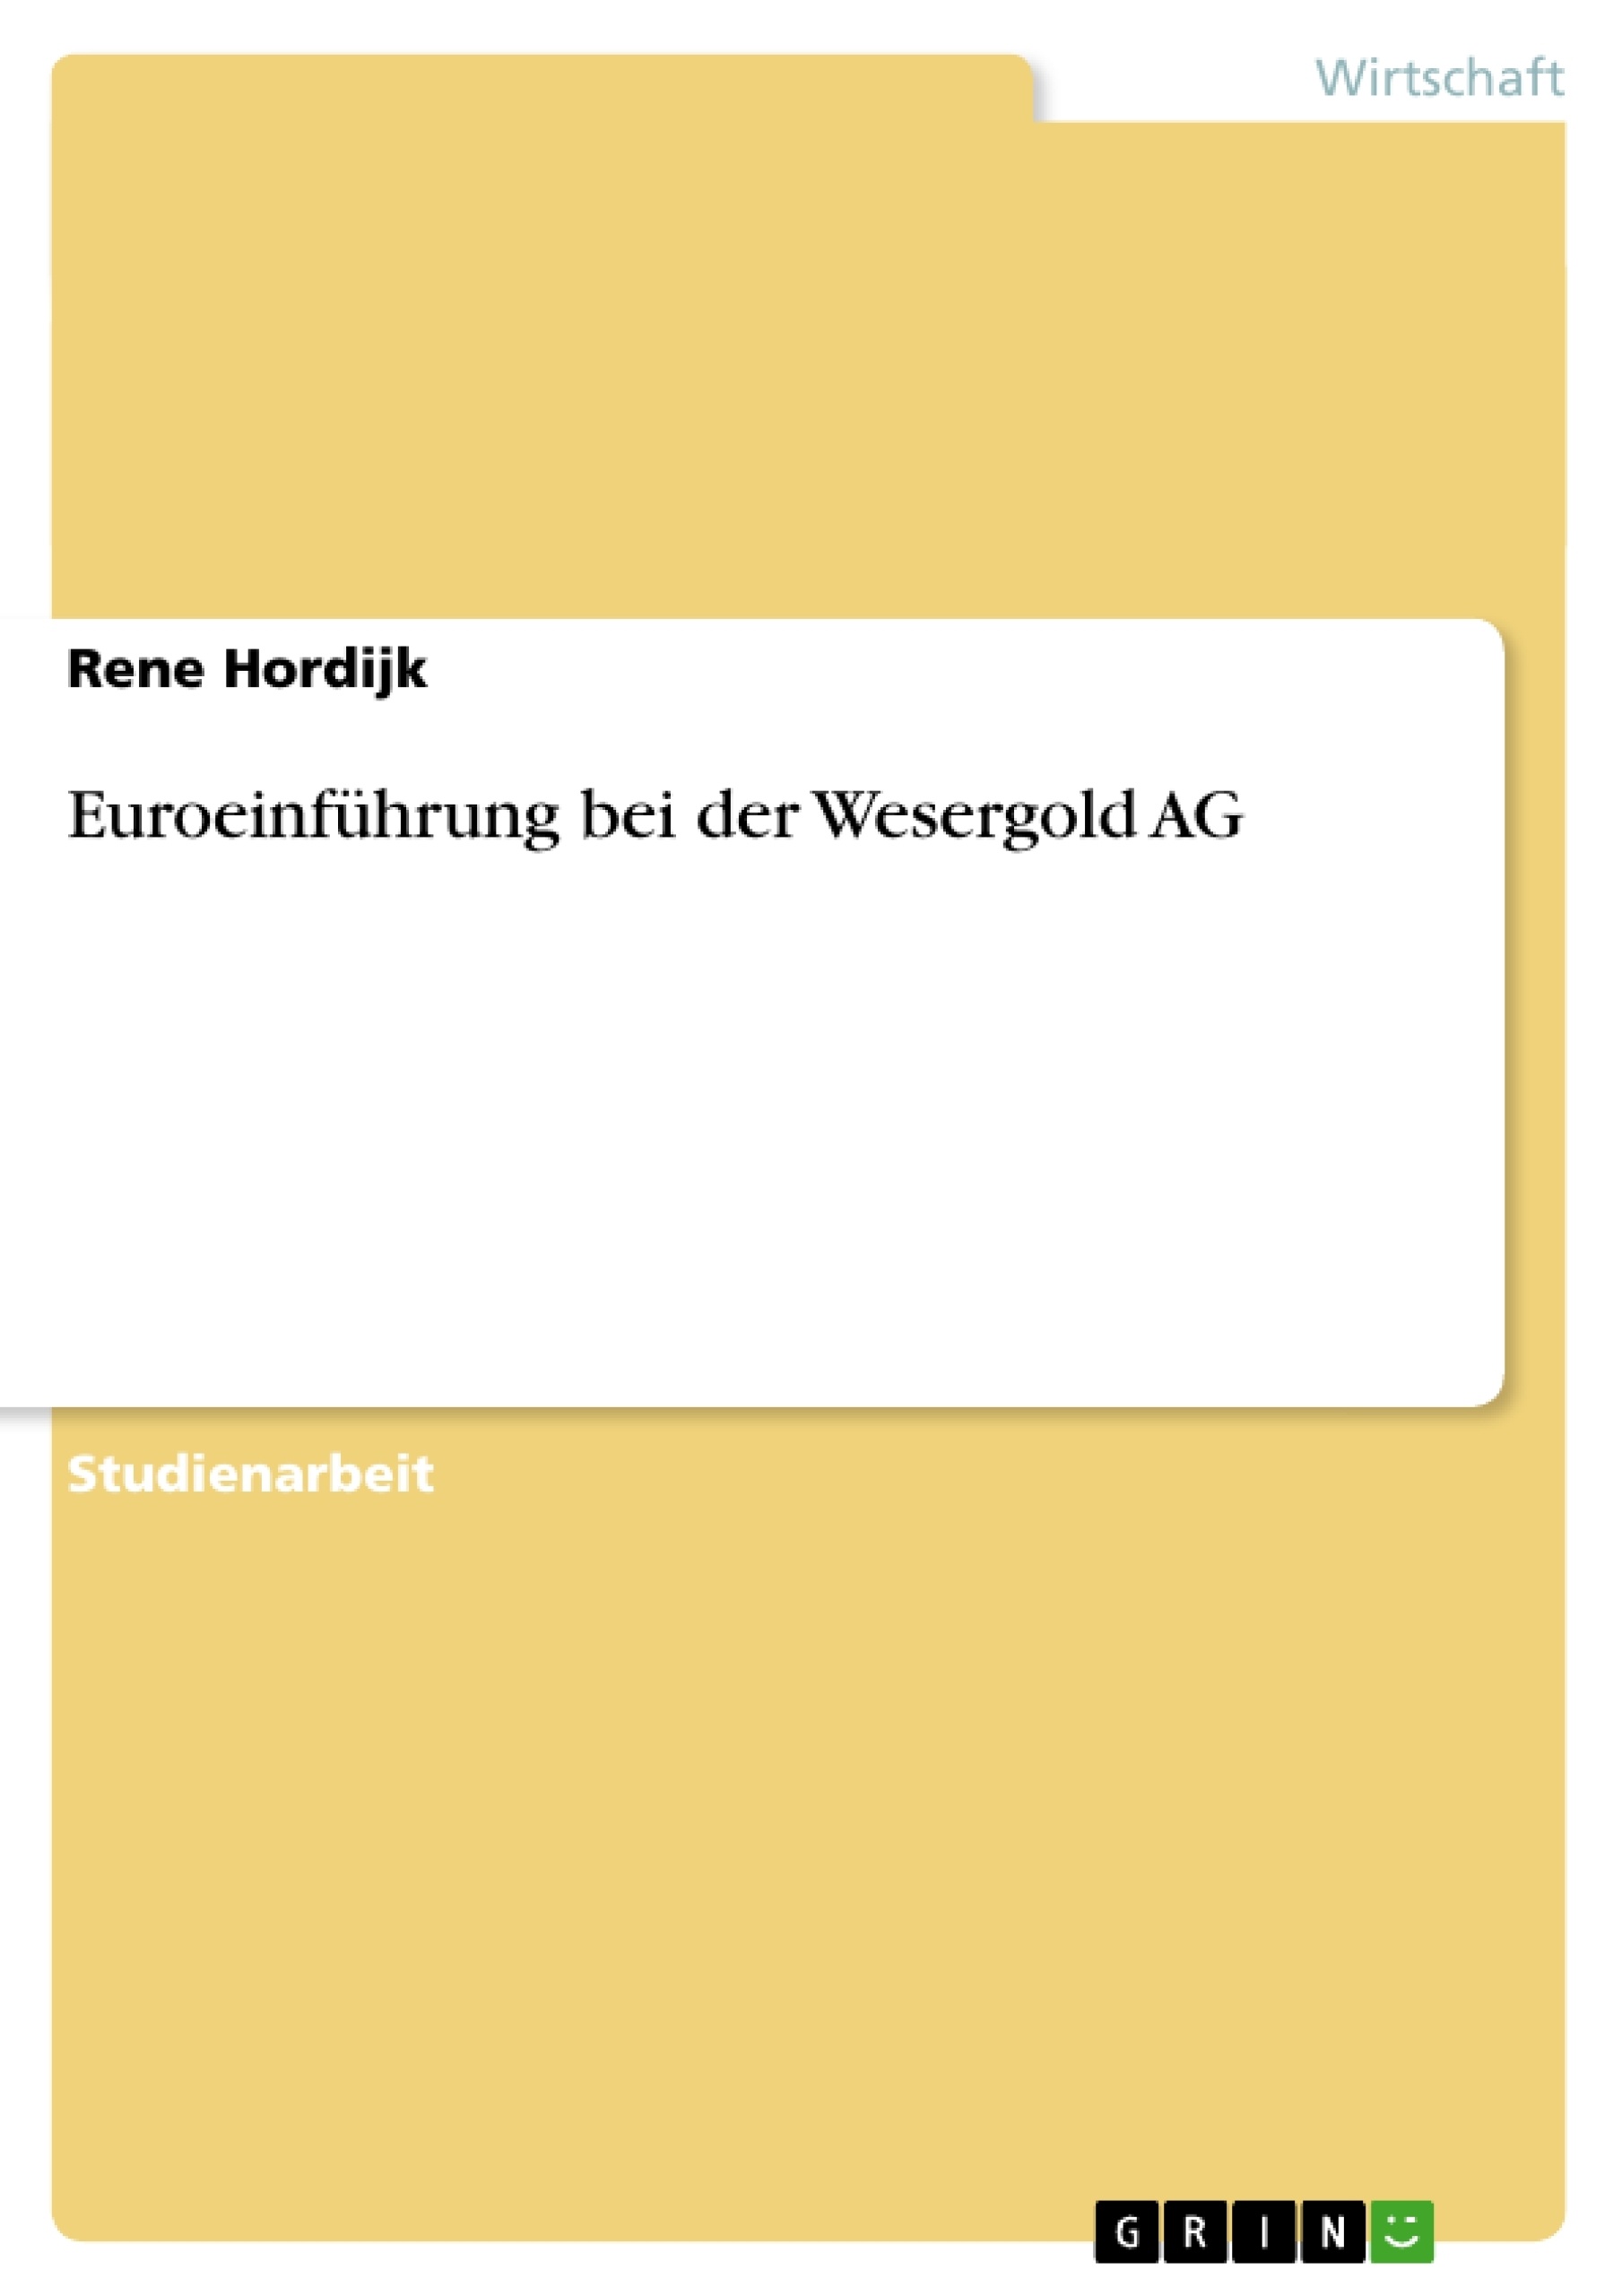 Title: Euroeinführung bei der Wesergold AG